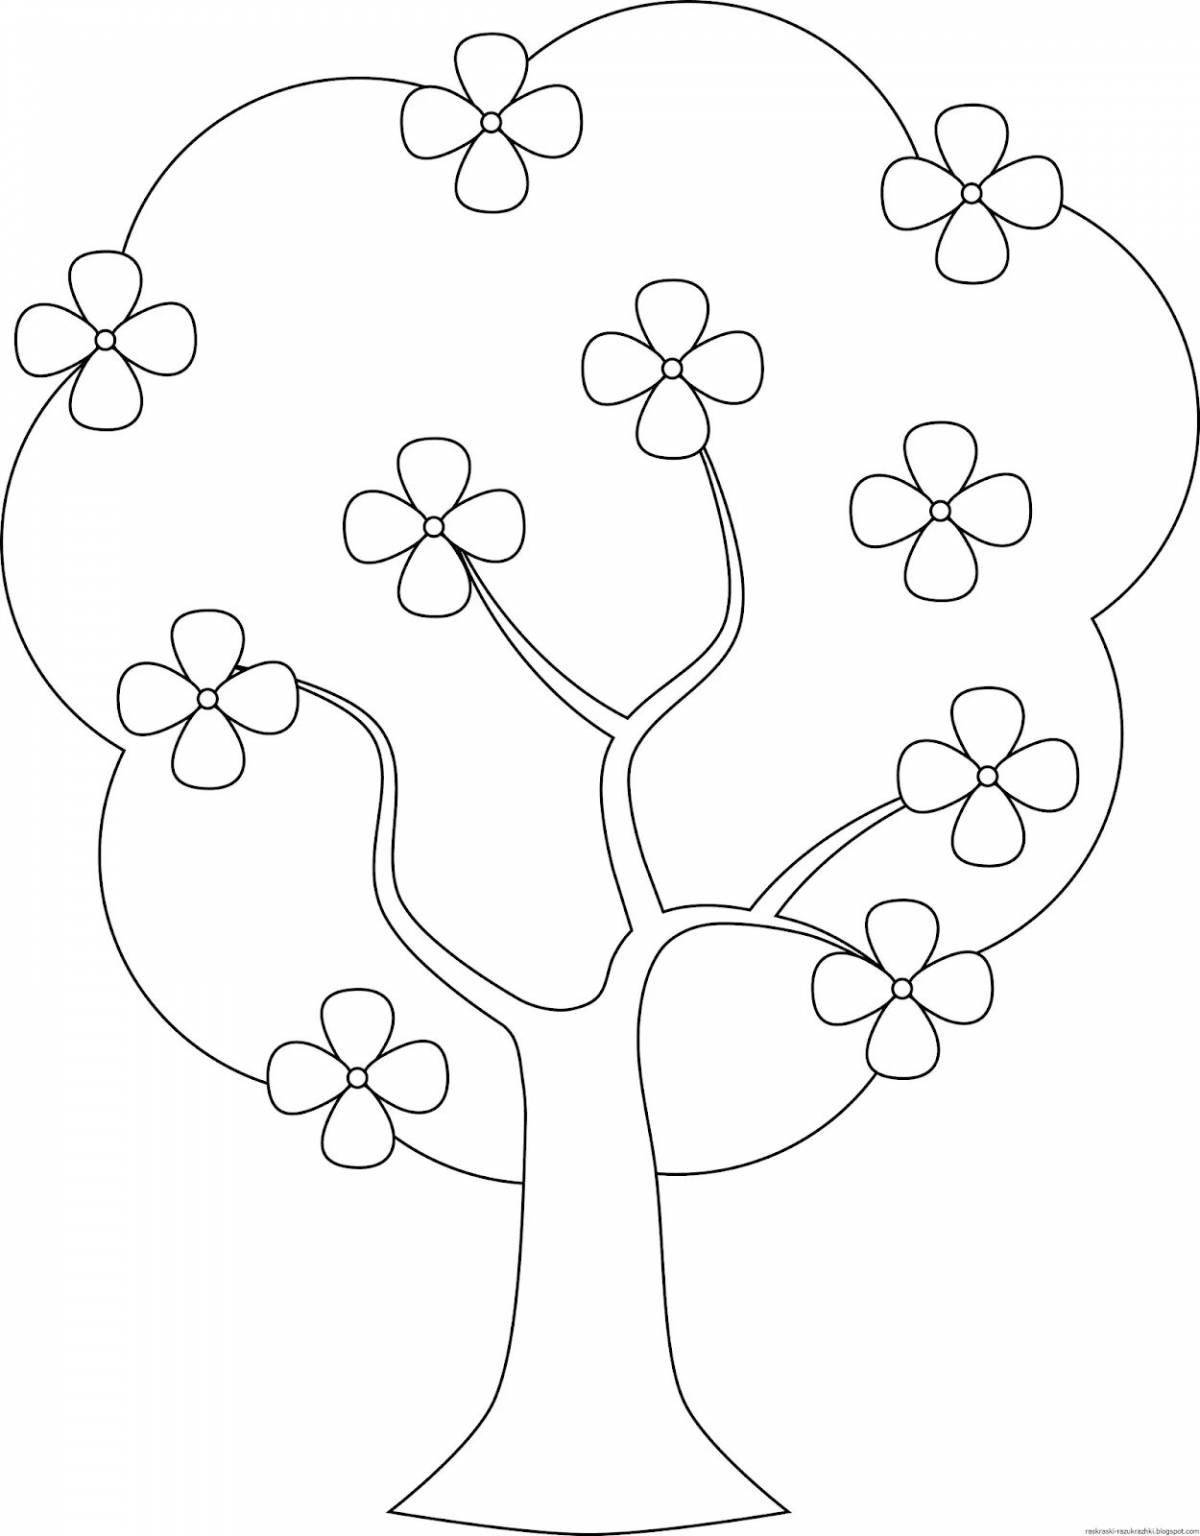 Раскраска «радостное дерево» для детей 2-3 лет